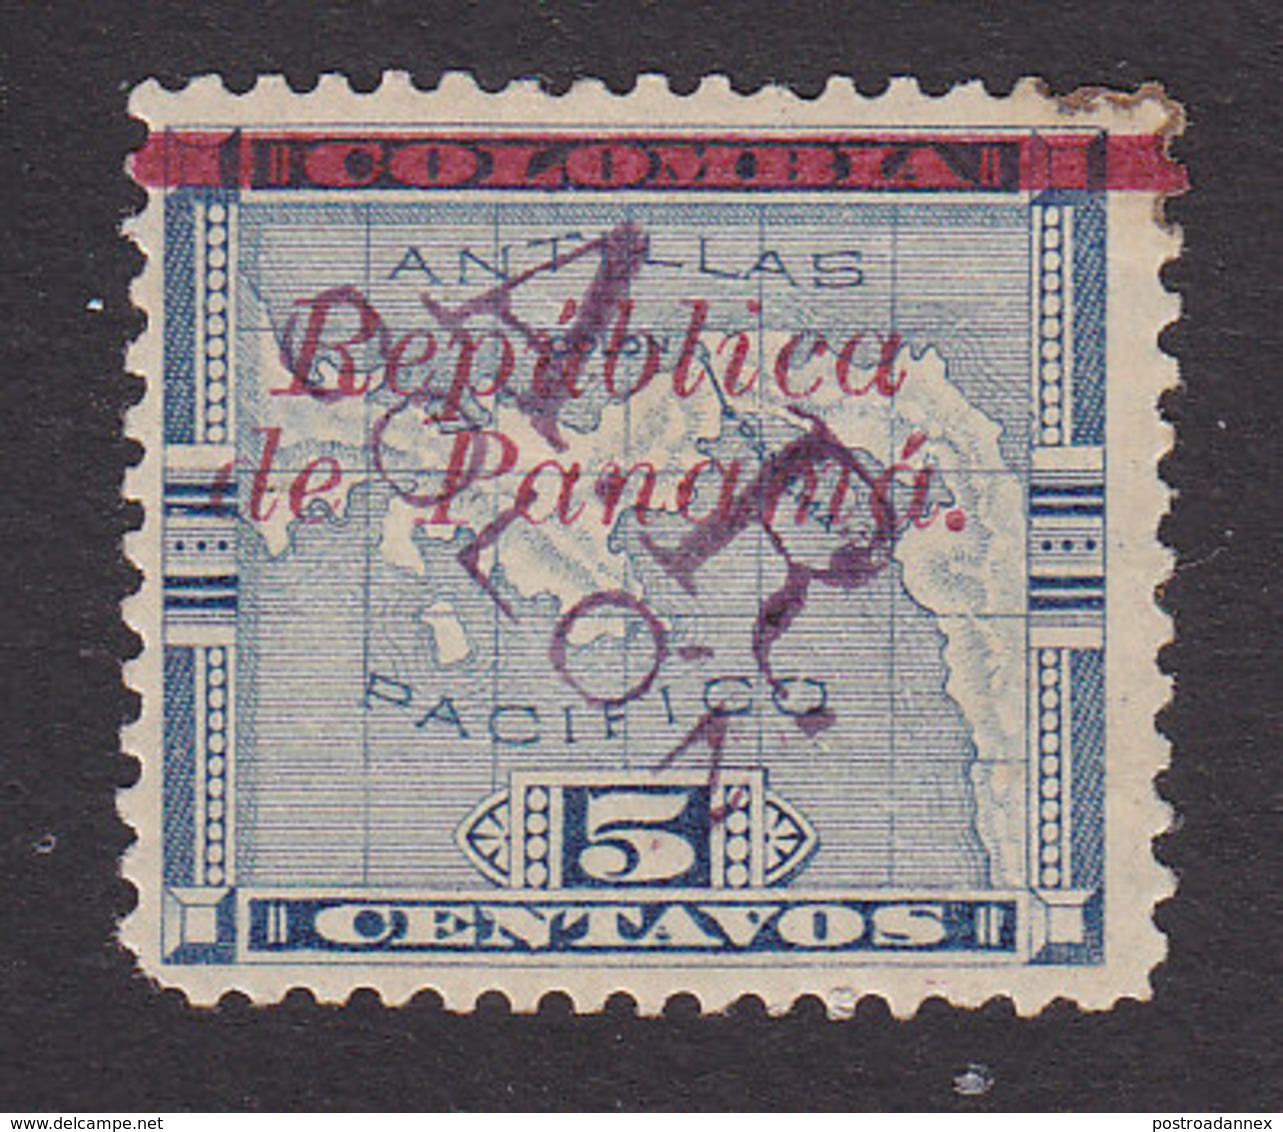 Panama, Scott #Non Scott, Mint Hinged, Map Overprinted, Issued 1903 - Panama